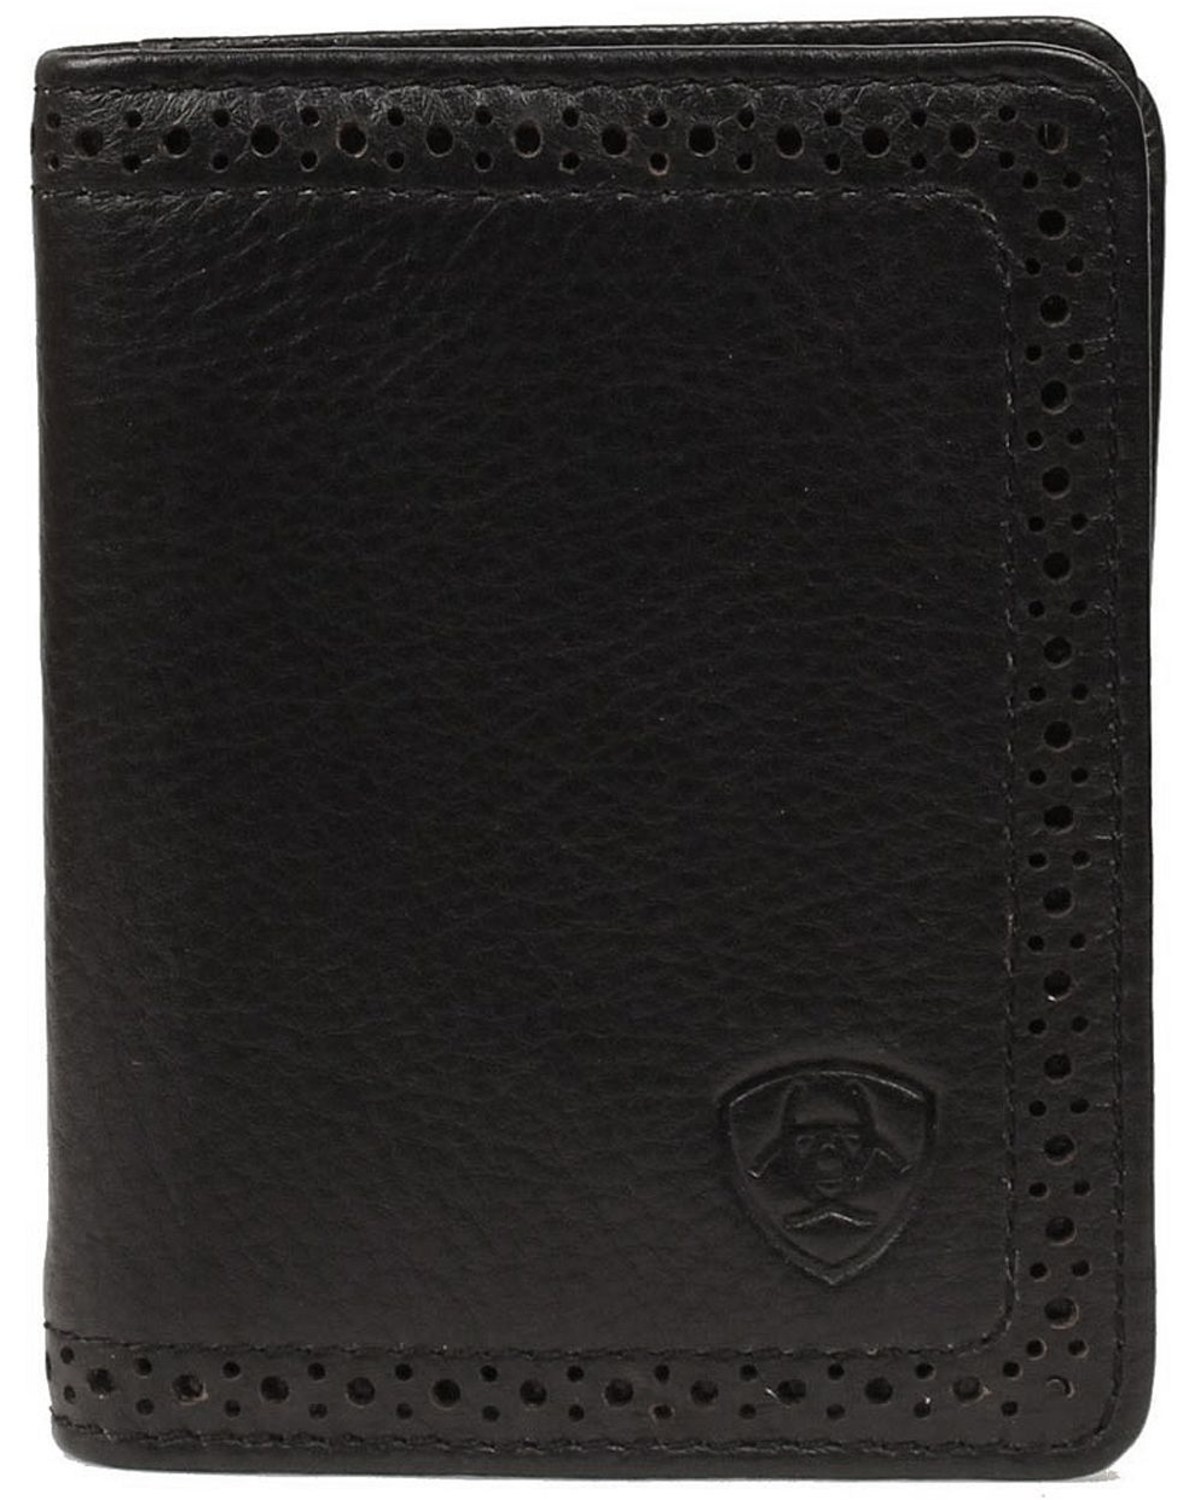 Ariat Men's Leather Bi-Fold Flipcase Wallet